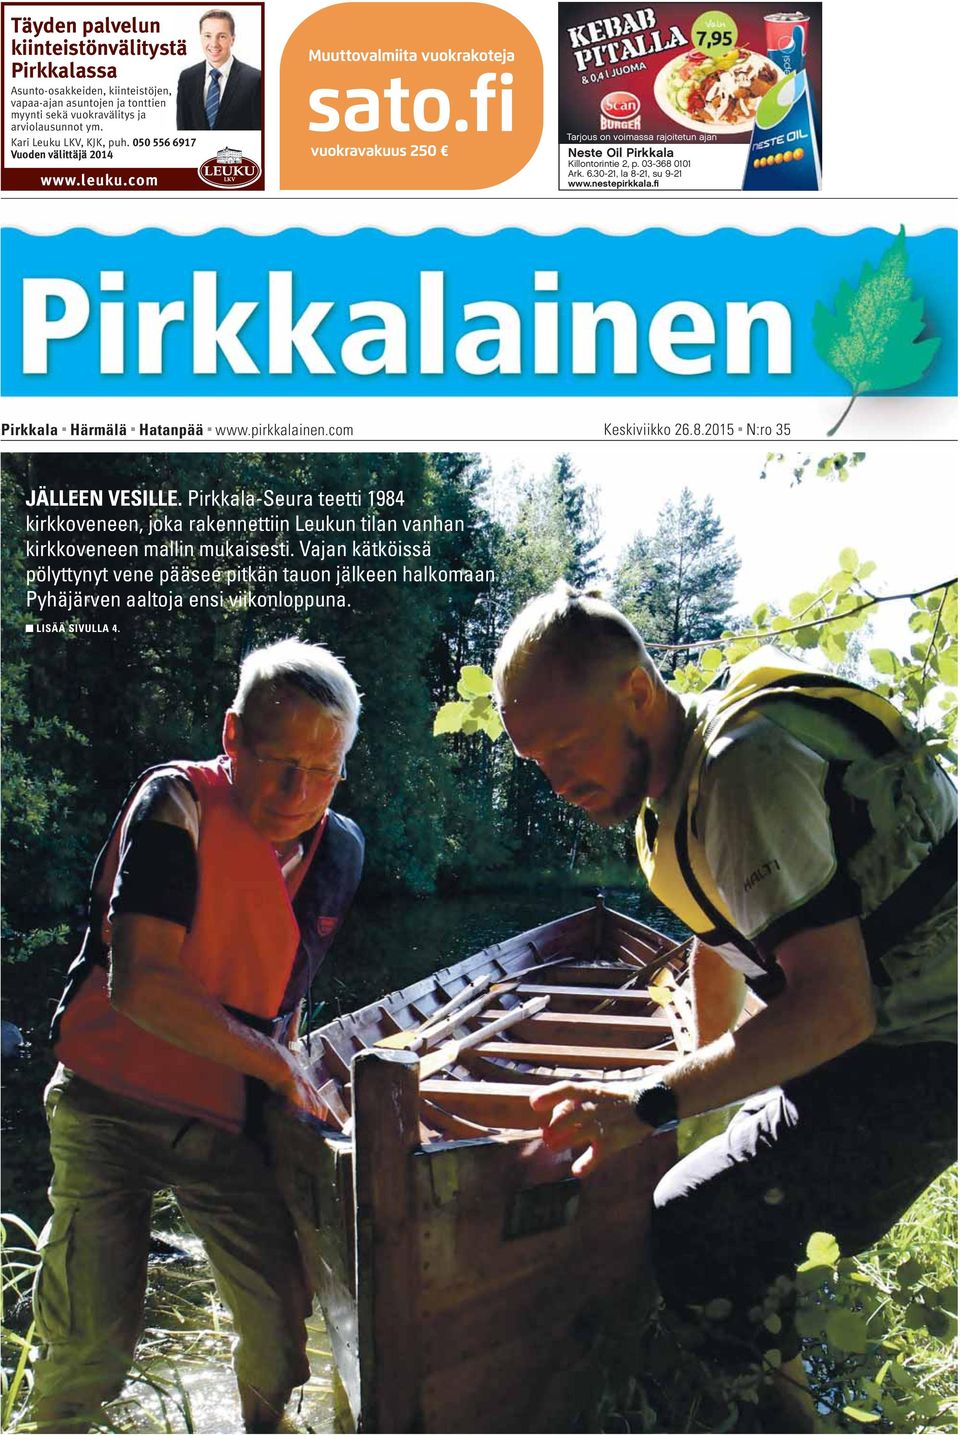 nestepirkkala.fi Pirkkala Härmälä Hatanpää www.pirkkalainen.com Keskiviikko 26.8.2015 N:ro 35 JÄLLEEN VESILLE.